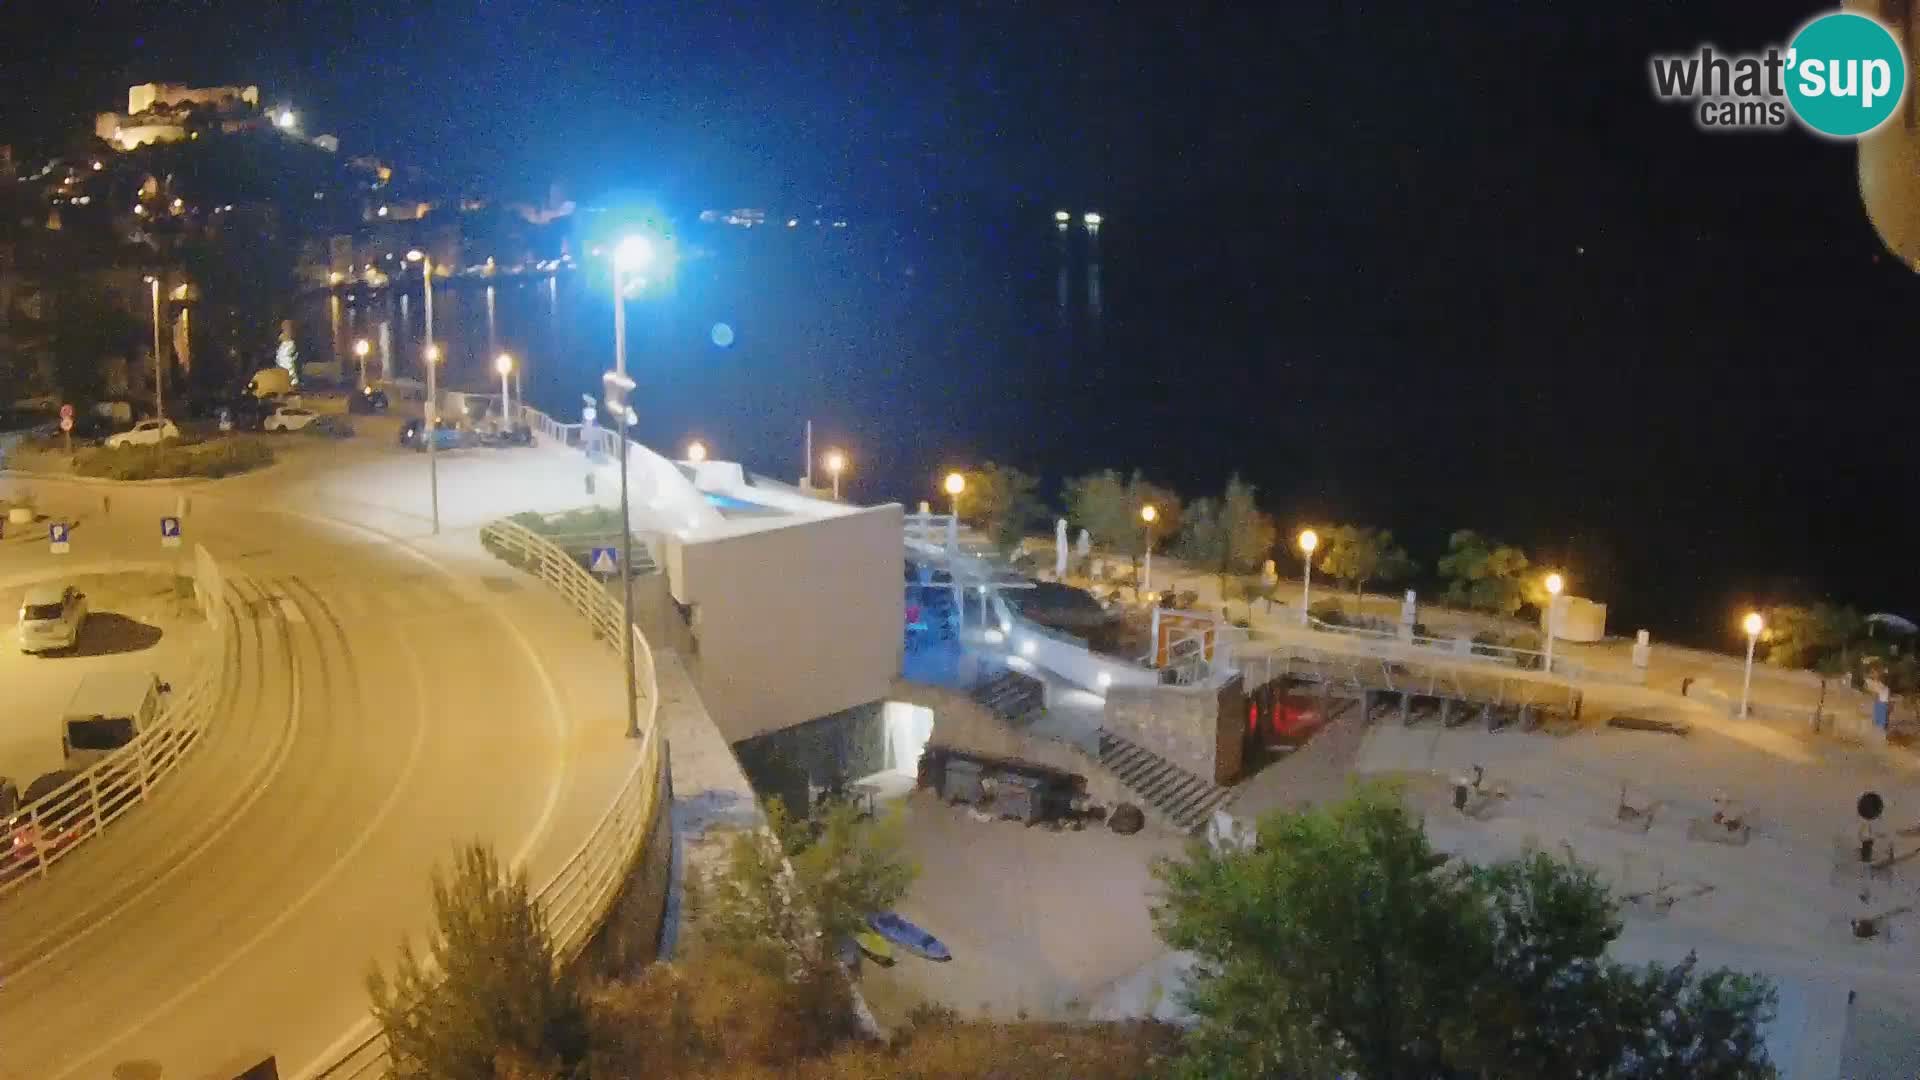 Camera en vivo Šibenik playa Banj